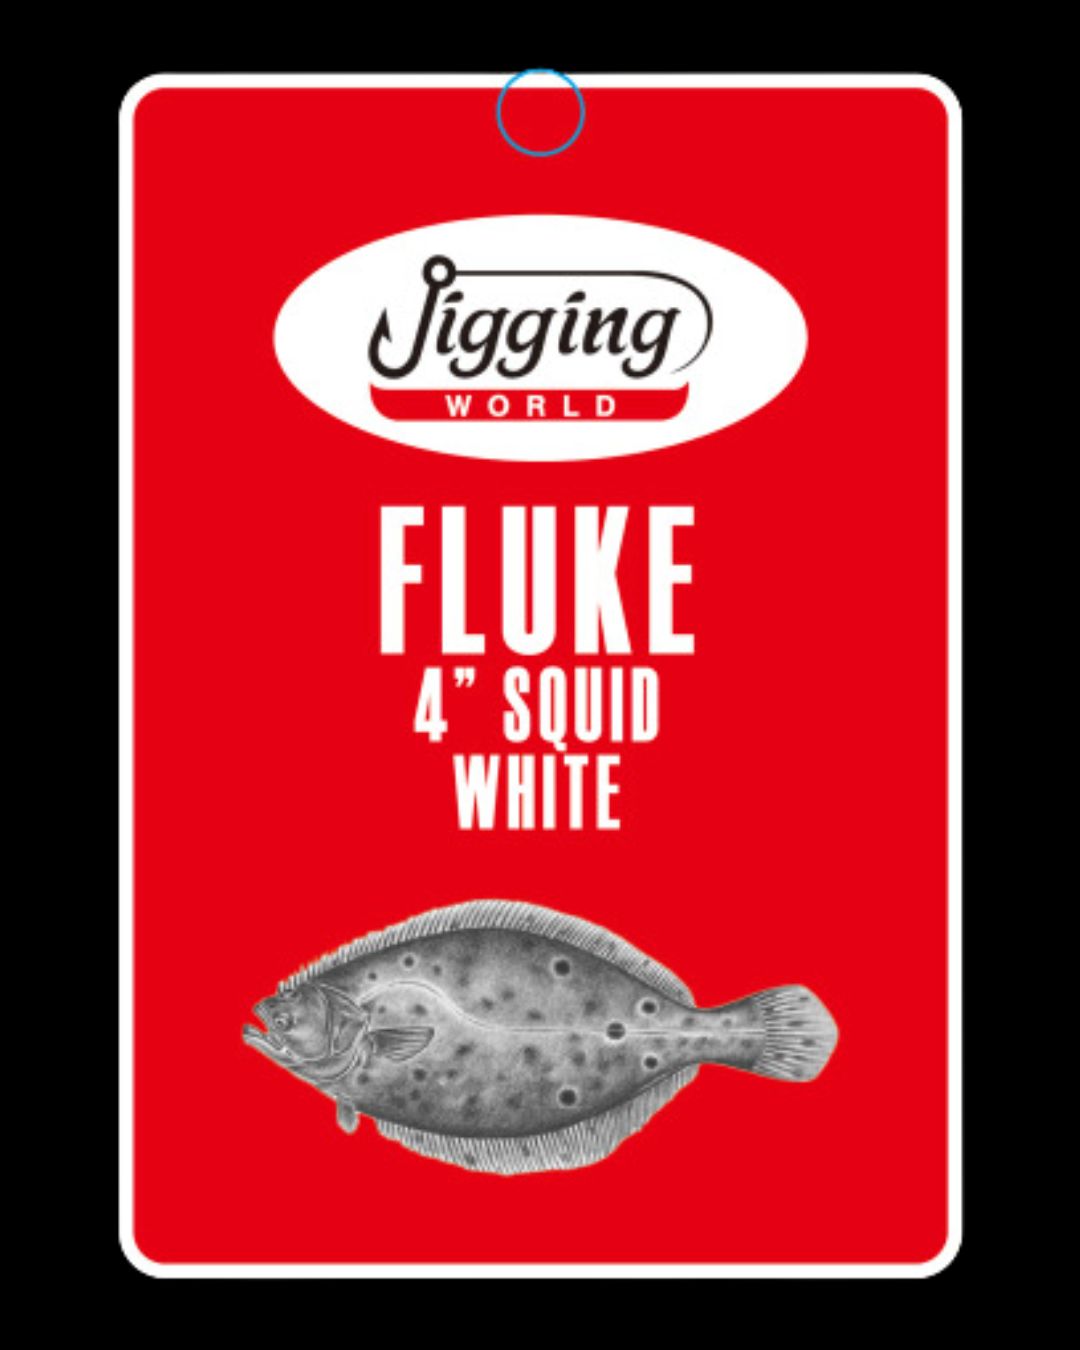 Jigging World Fluke Rig with 4 Squid White